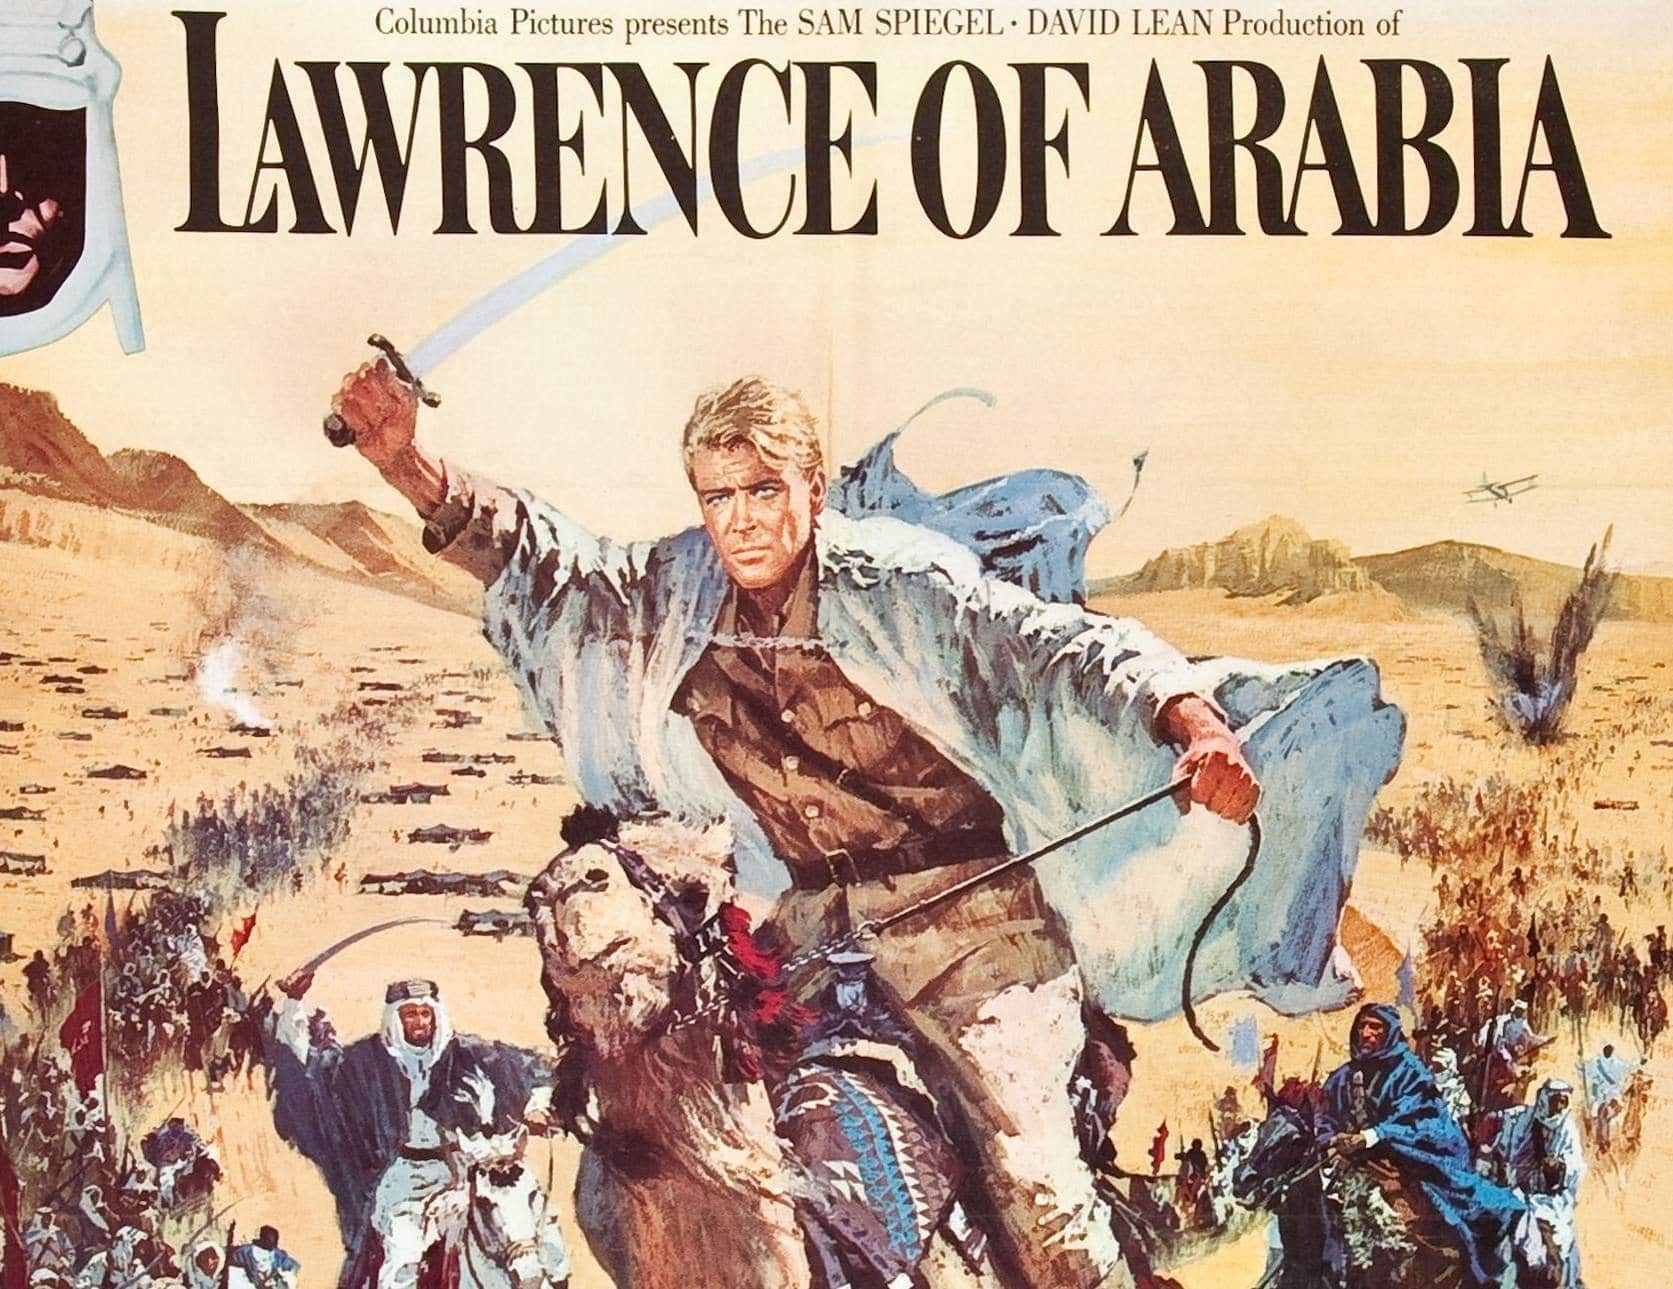 Lawrence d' Arabia